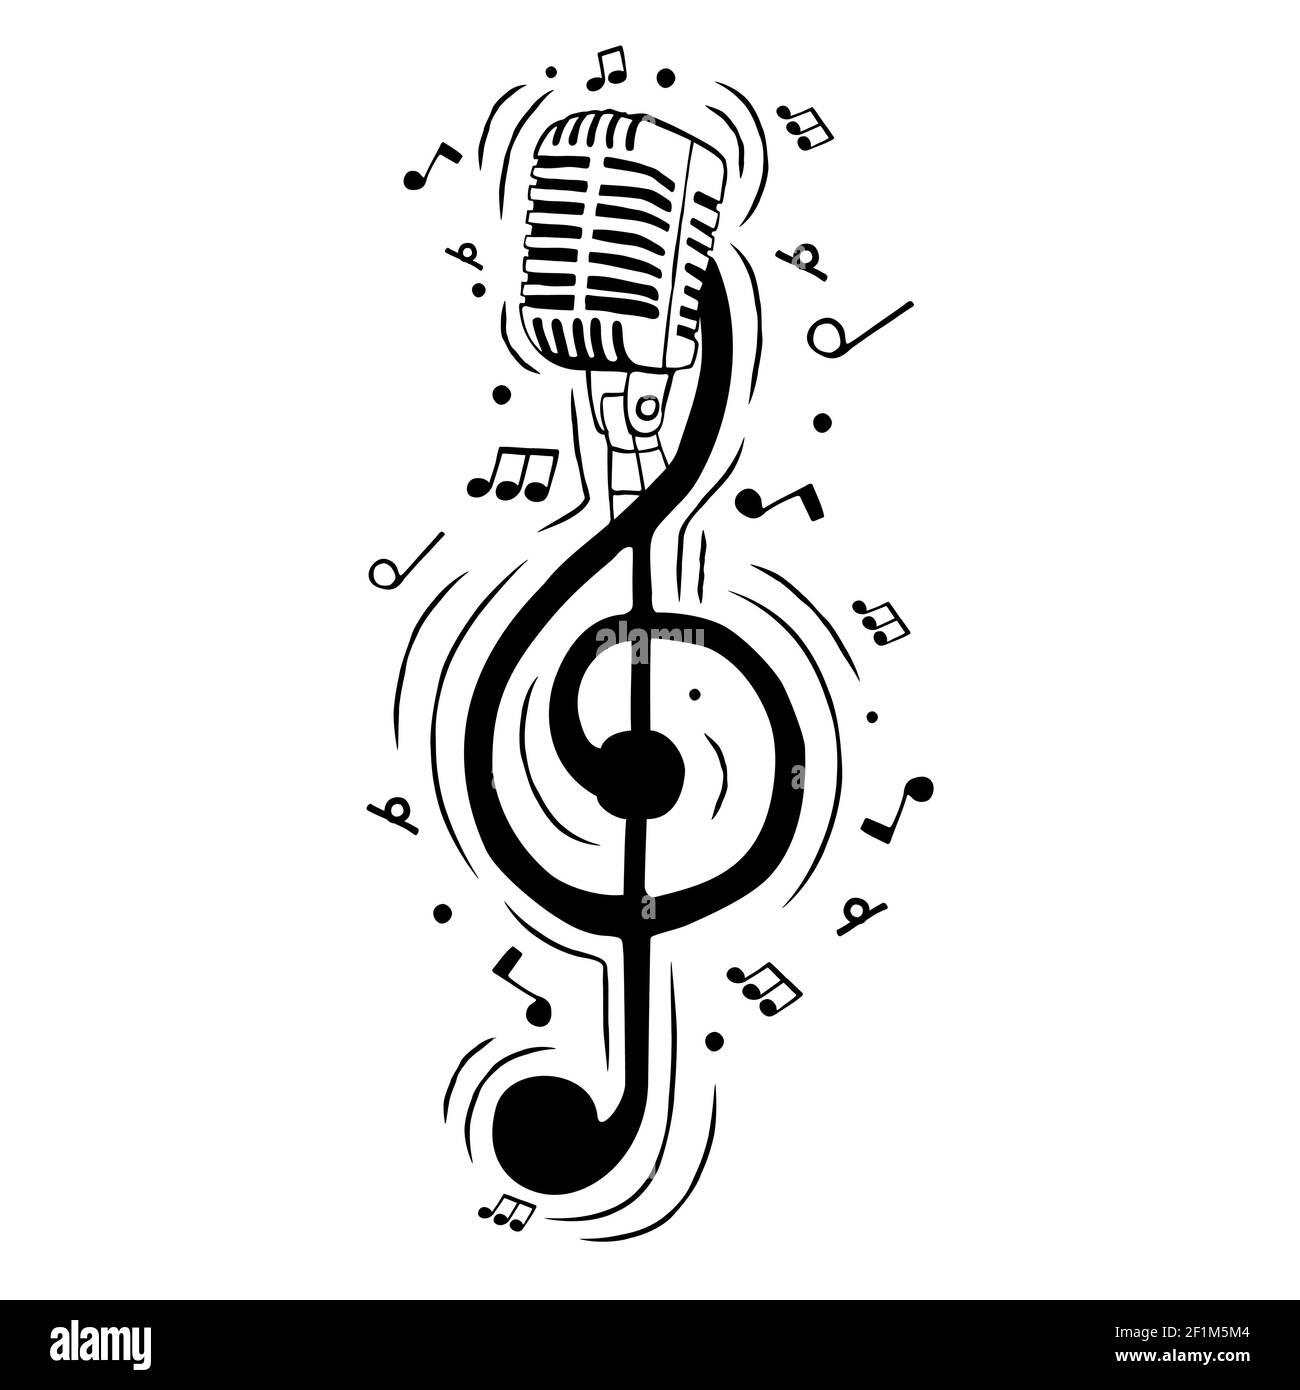 Musik-Höhenschlüssel-Note als Mikrofon-Illustration für musikalische Veranstaltung oder Gesangskonzept. Handgezeichnete Karikatur auf isoliertem Hintergrund. Stock Vektor